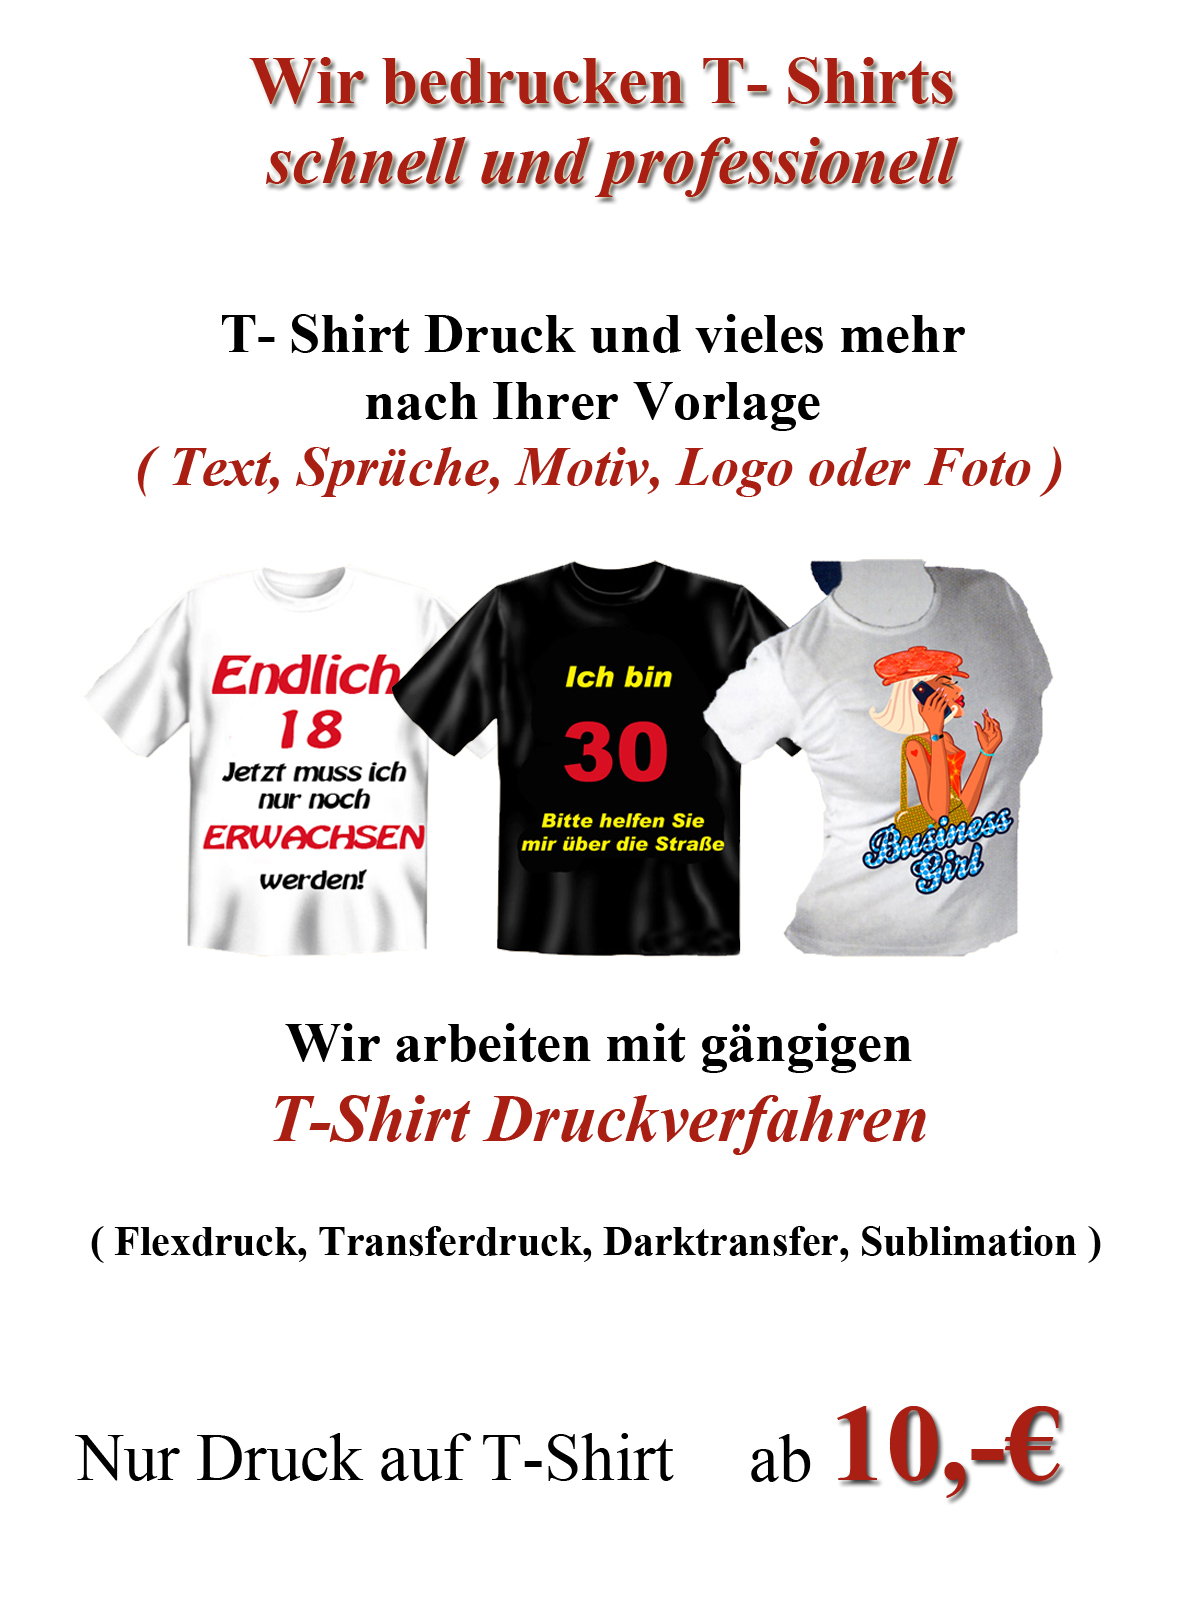 T-shirt Druck